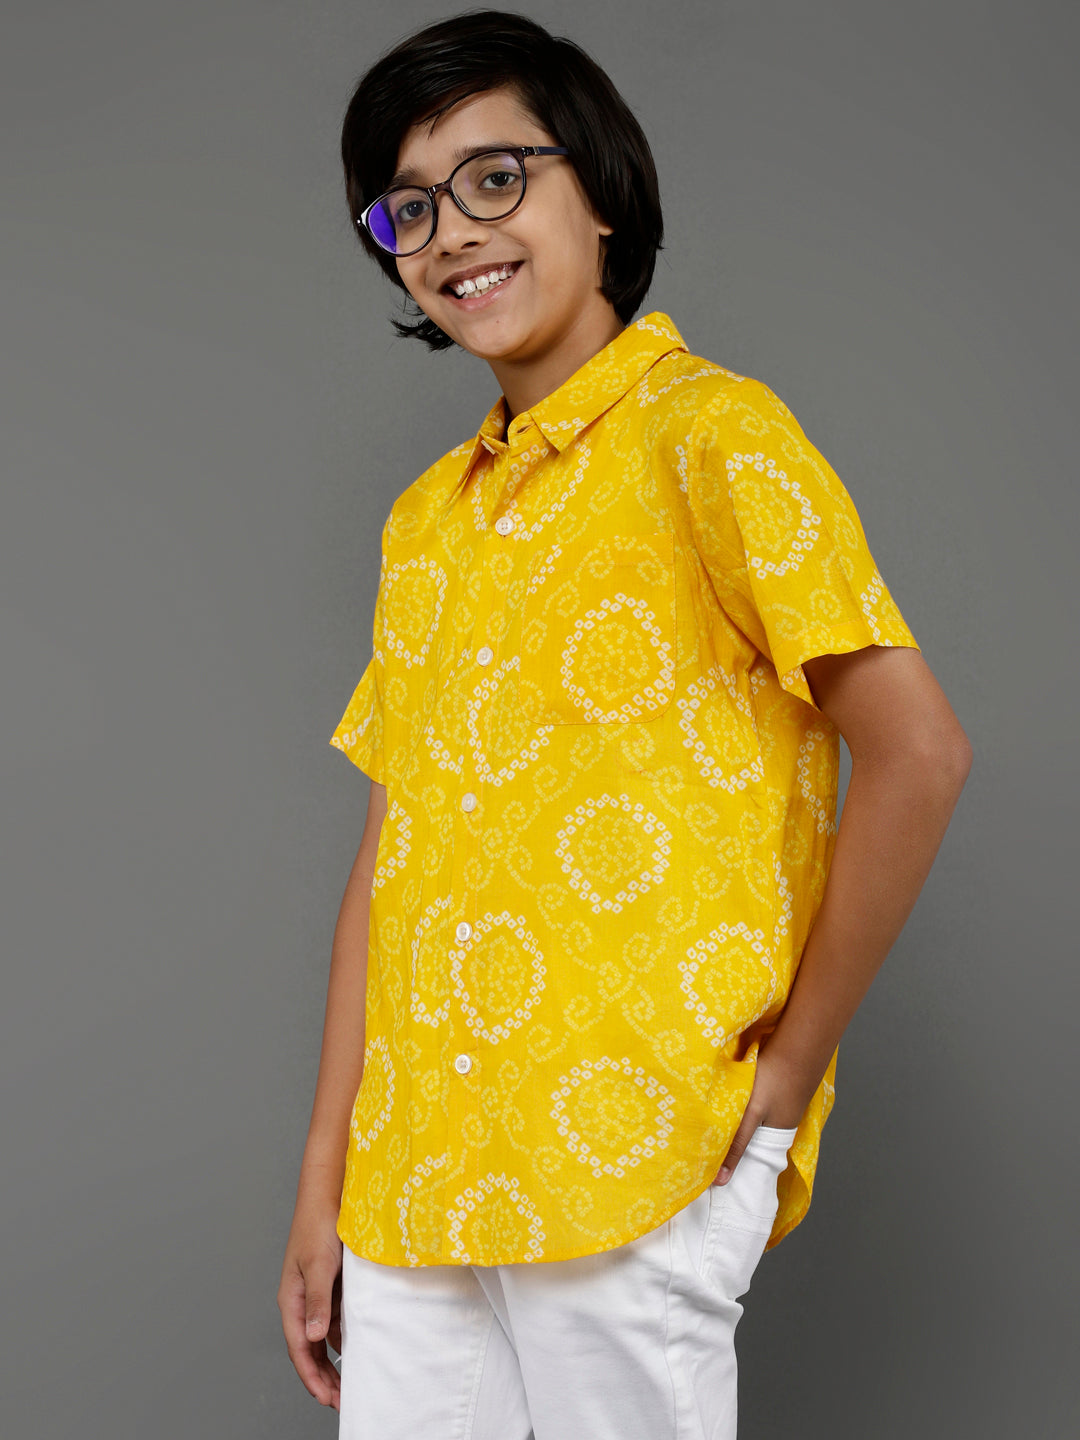 Boy's Yellow Bandhani Print Shirt - Aks Boys